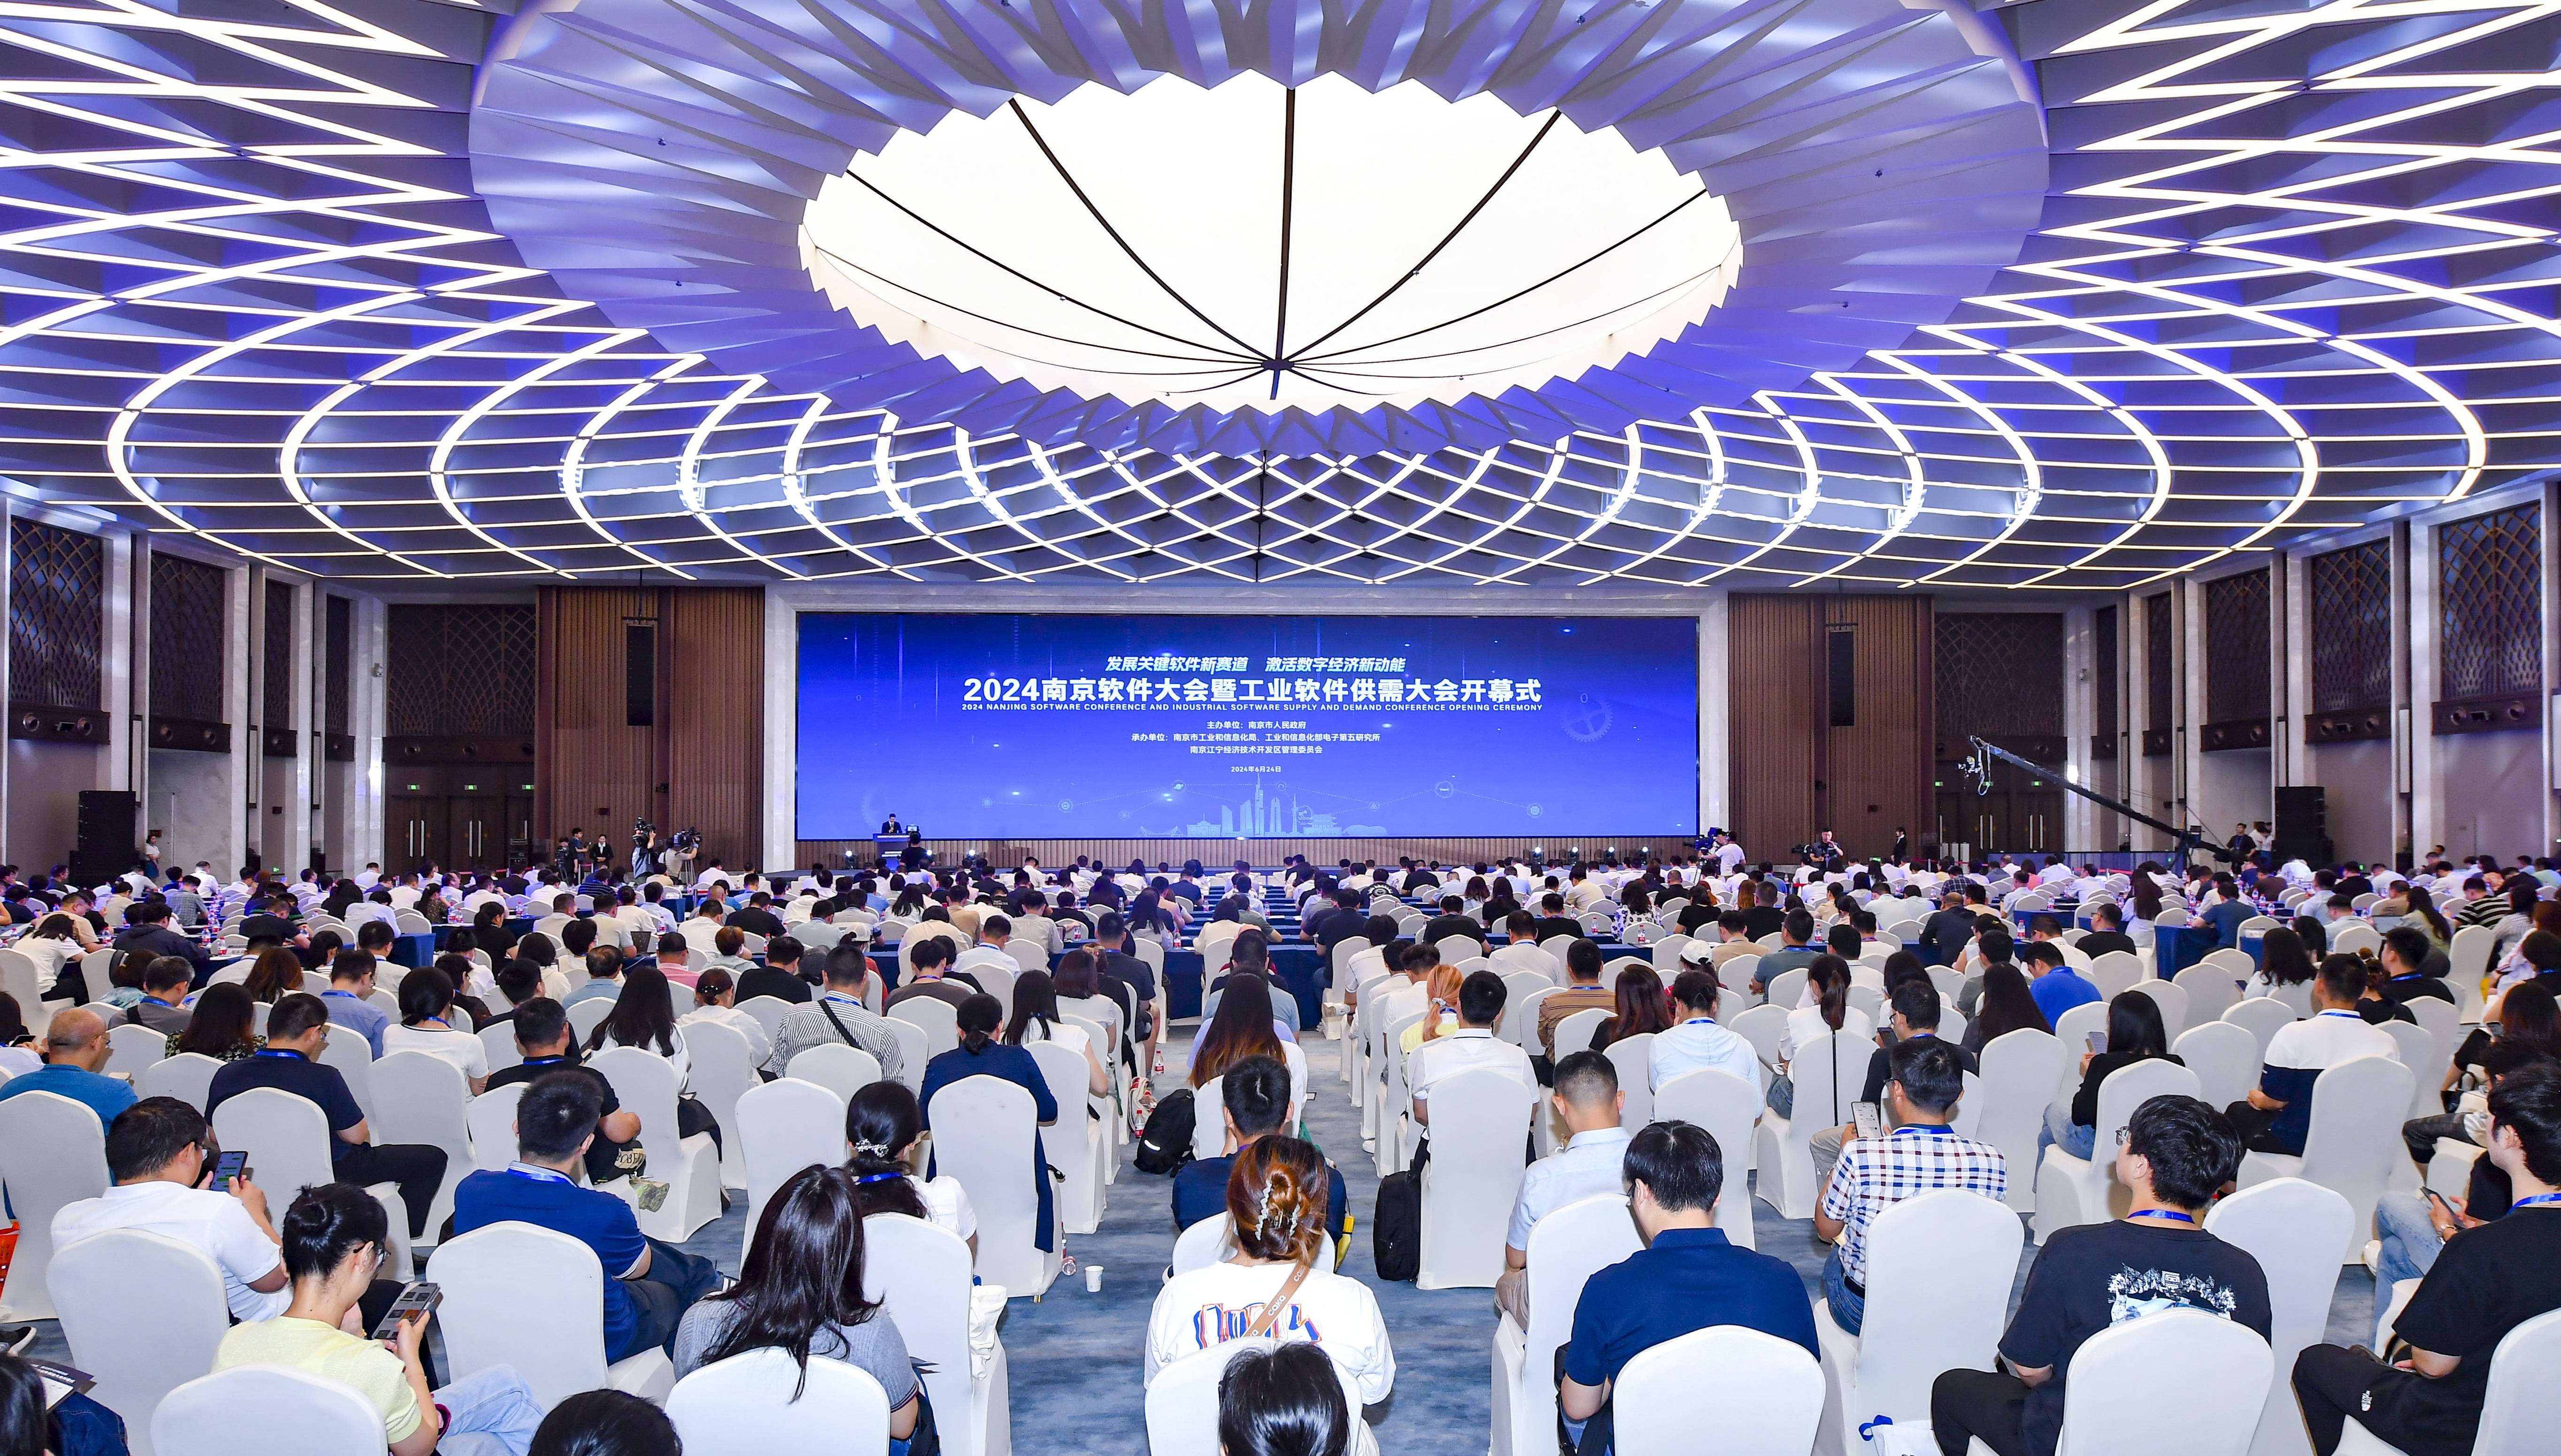 关键软件基金俱乐部 南京成立工业软件应用创新中心